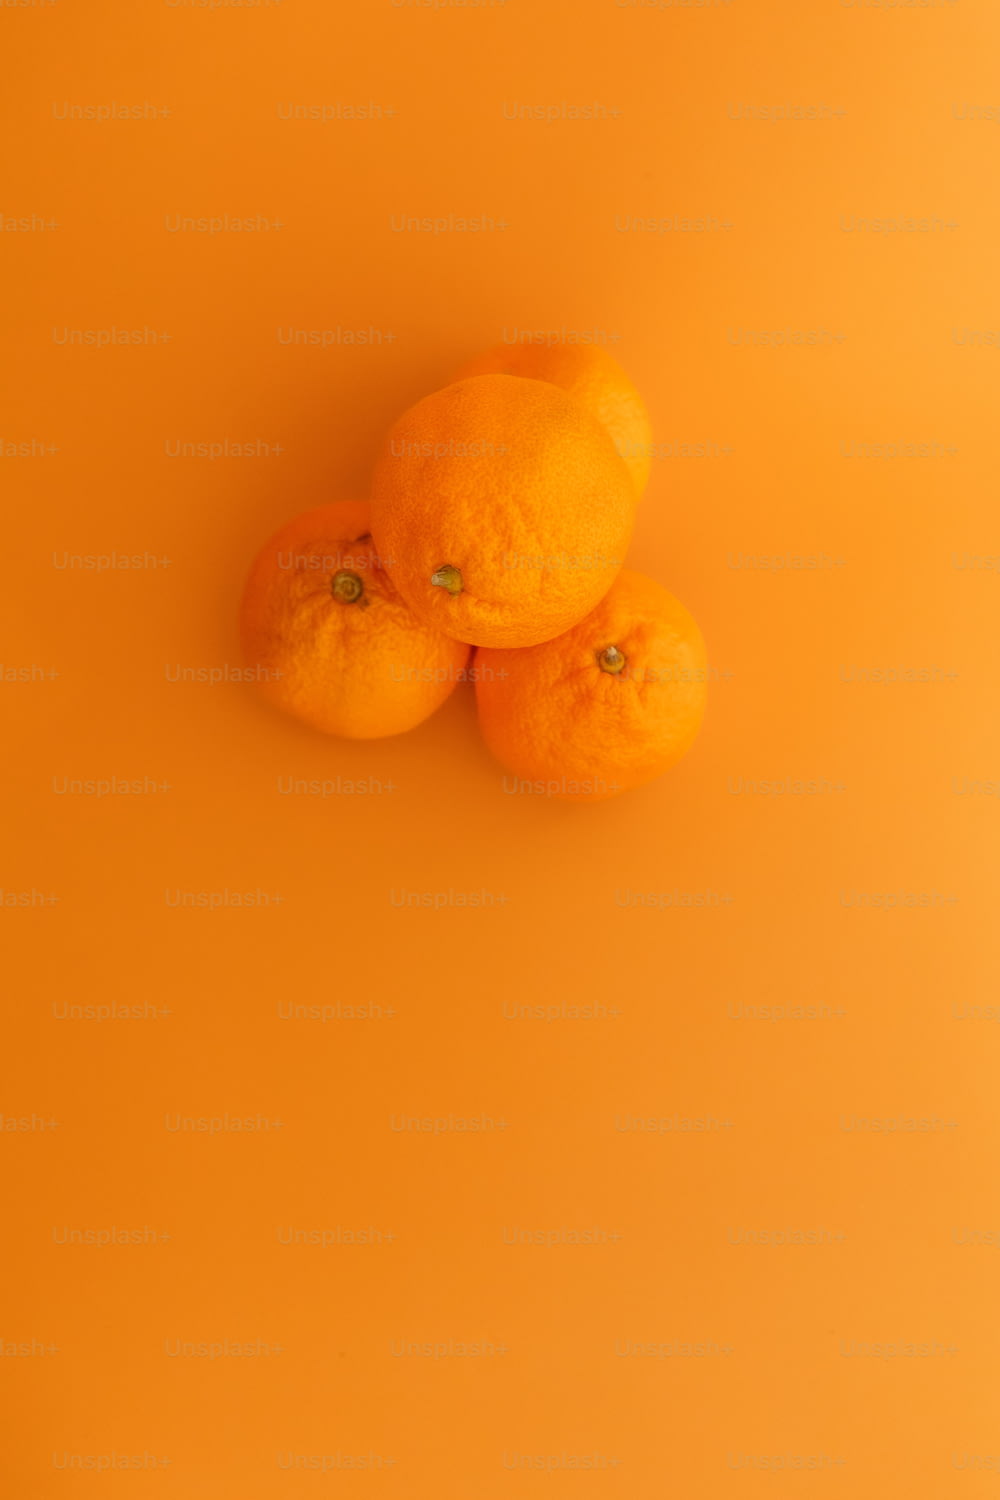 Tres naranjas sentadas encima de una superficie amarilla